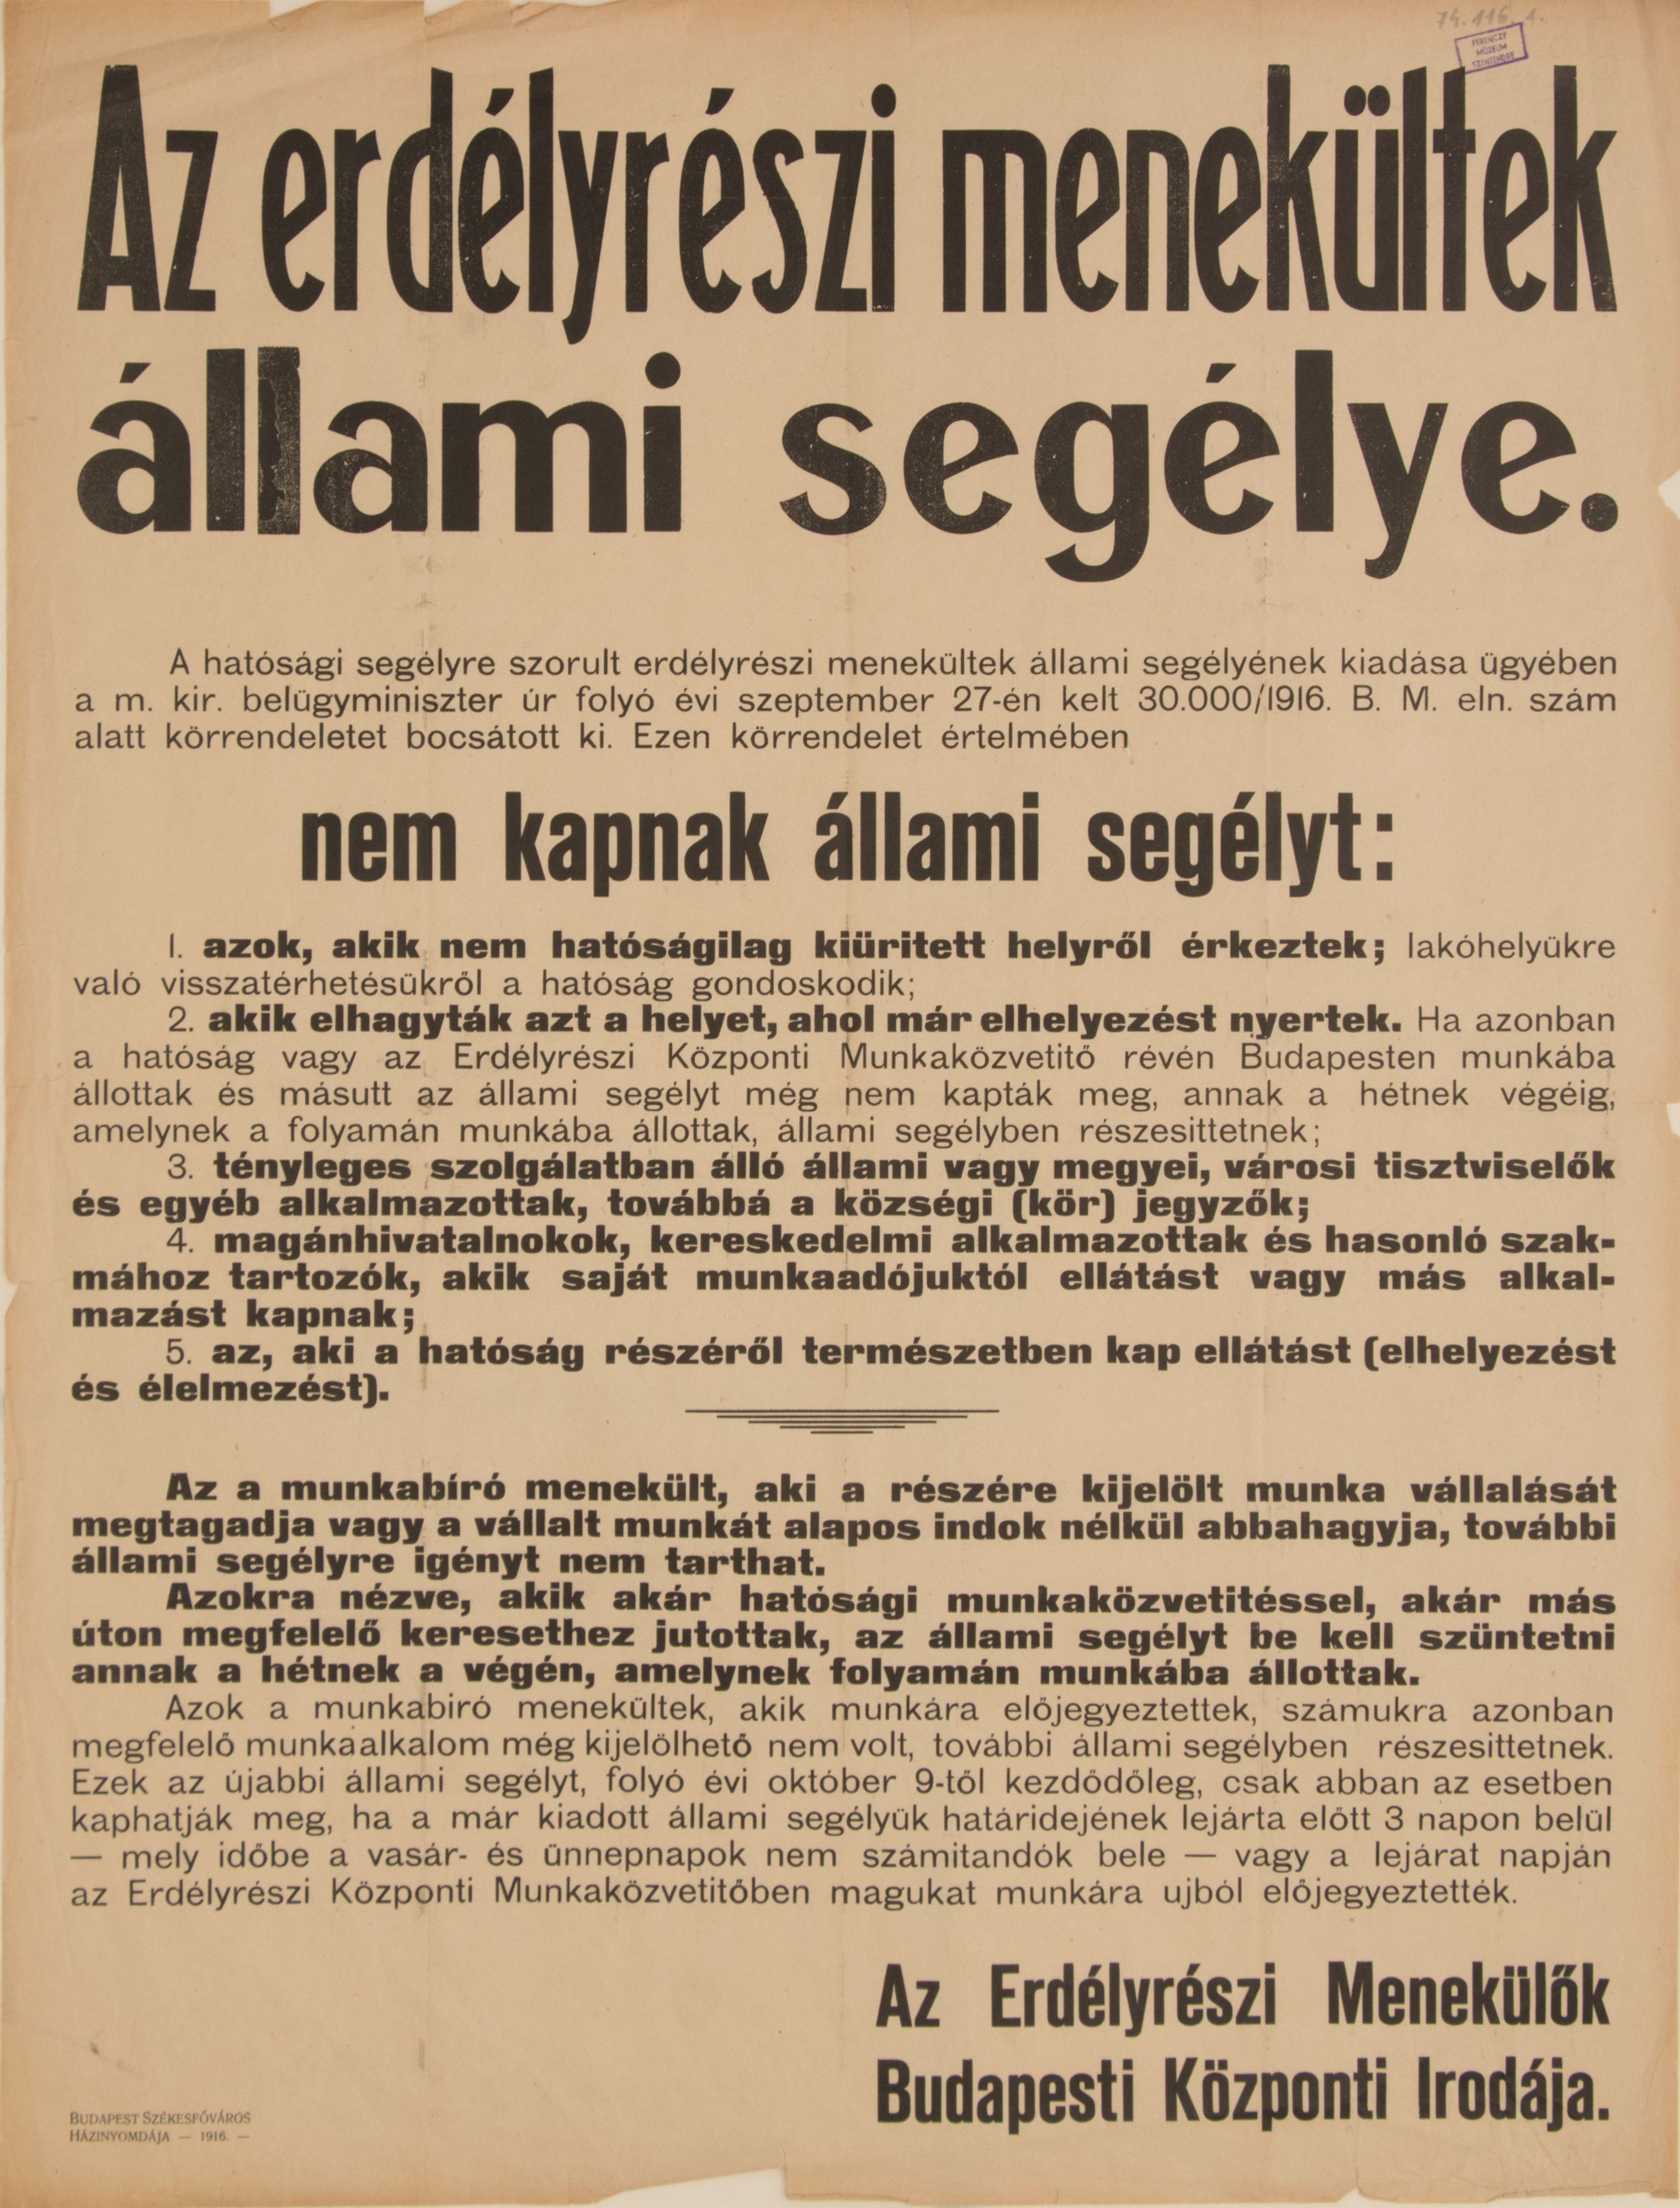 Erdélyrészi menekültek állami segélye, 1916.09. (Ferenczy Múzeumi Centrum CC BY-NC-SA)